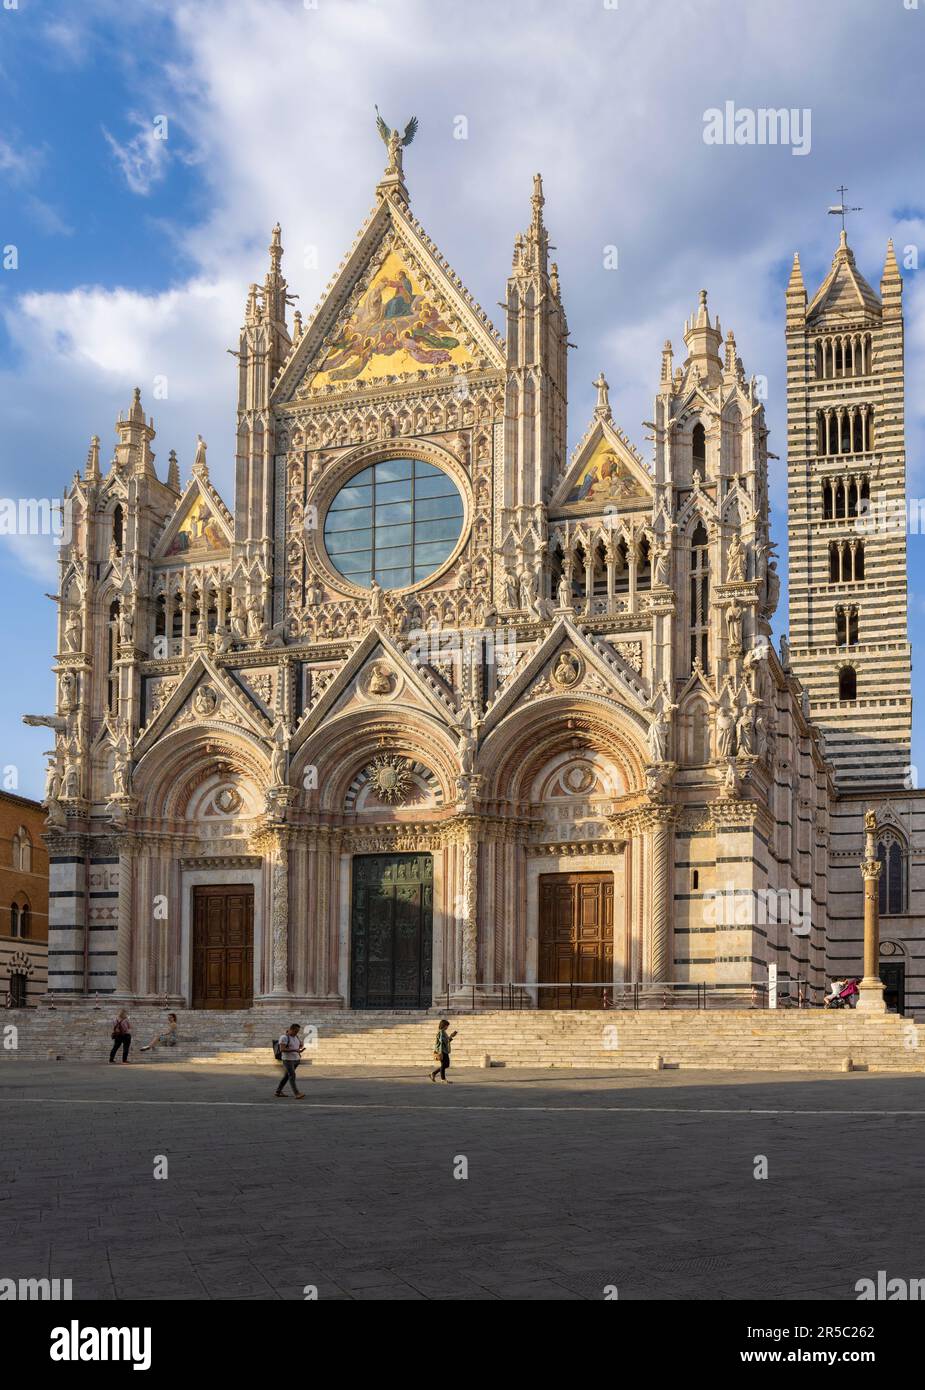 Siena, Provincia di Siena, Toscana, Italia. Il duomo romanico-gotico, o cattedrale, costruito nel 13th ° secolo. Cattedrale Metropolitana di Santa Maria di Foto Stock